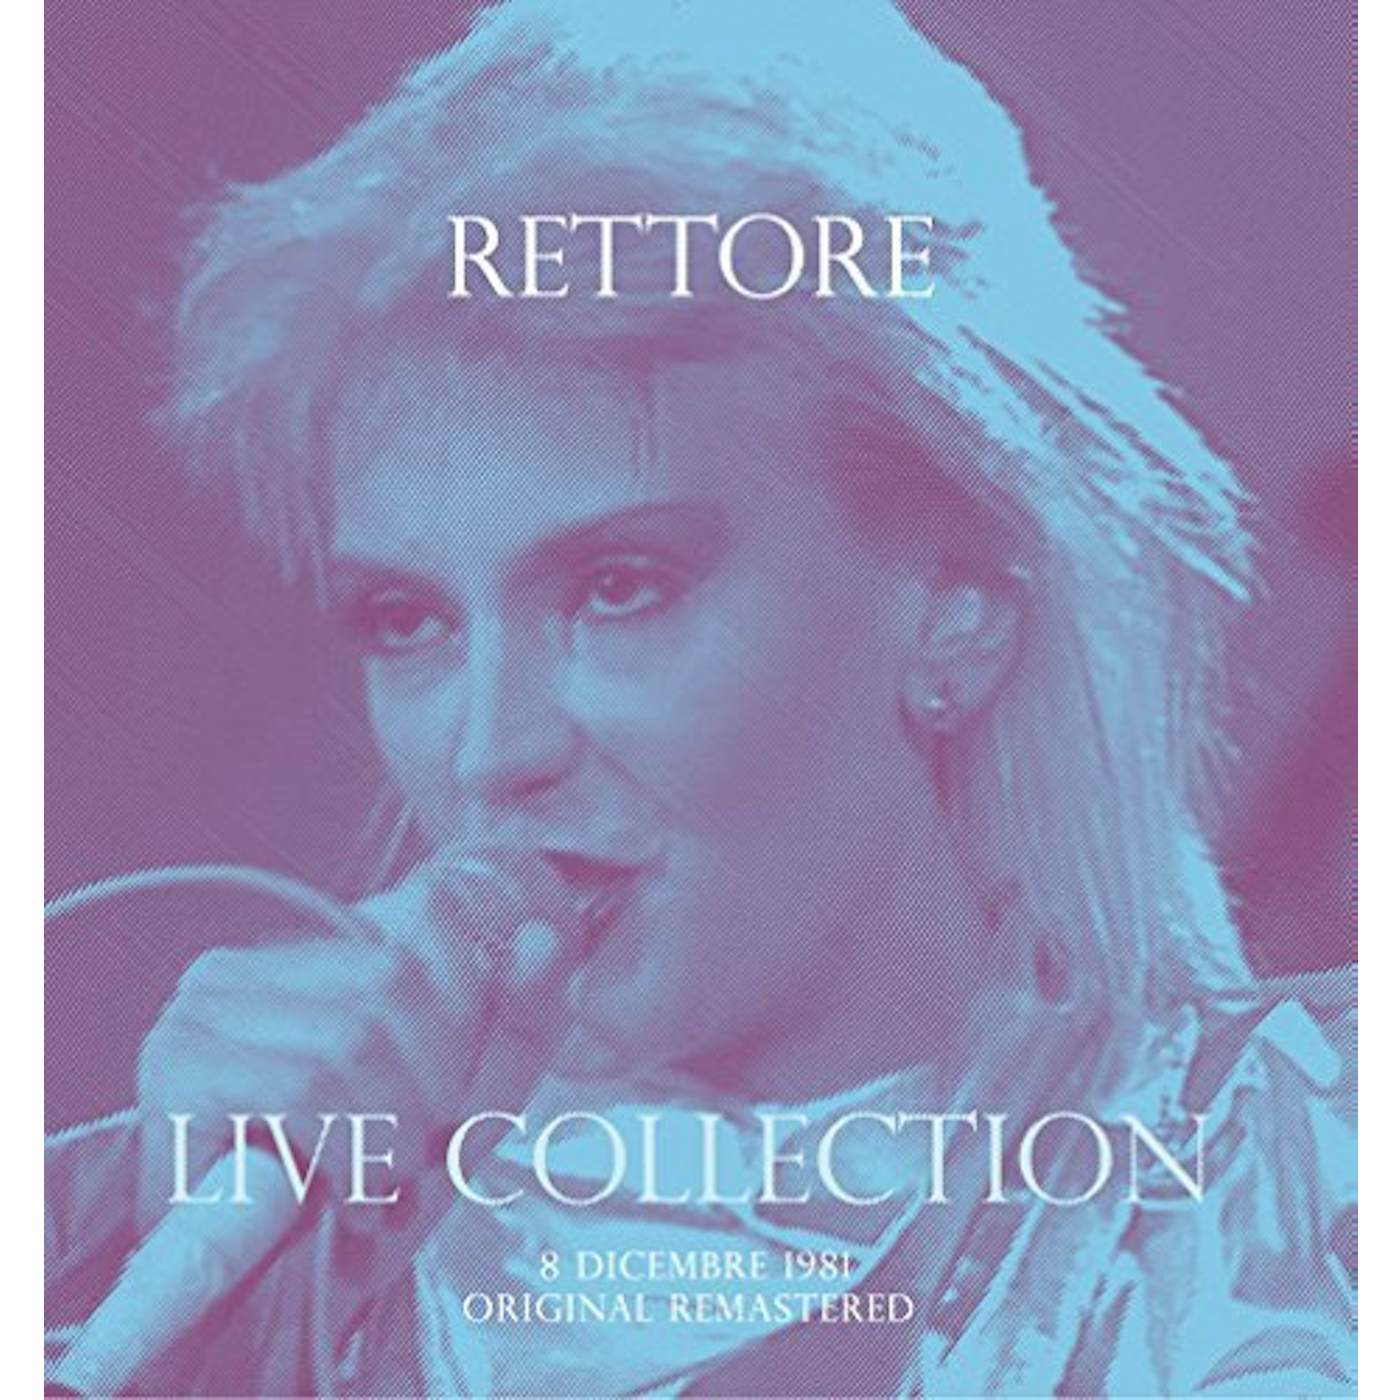 Donatella Rettore CONCERTO LIVE AT RSI (08 DICEMBRE 1981) Vinyl Record